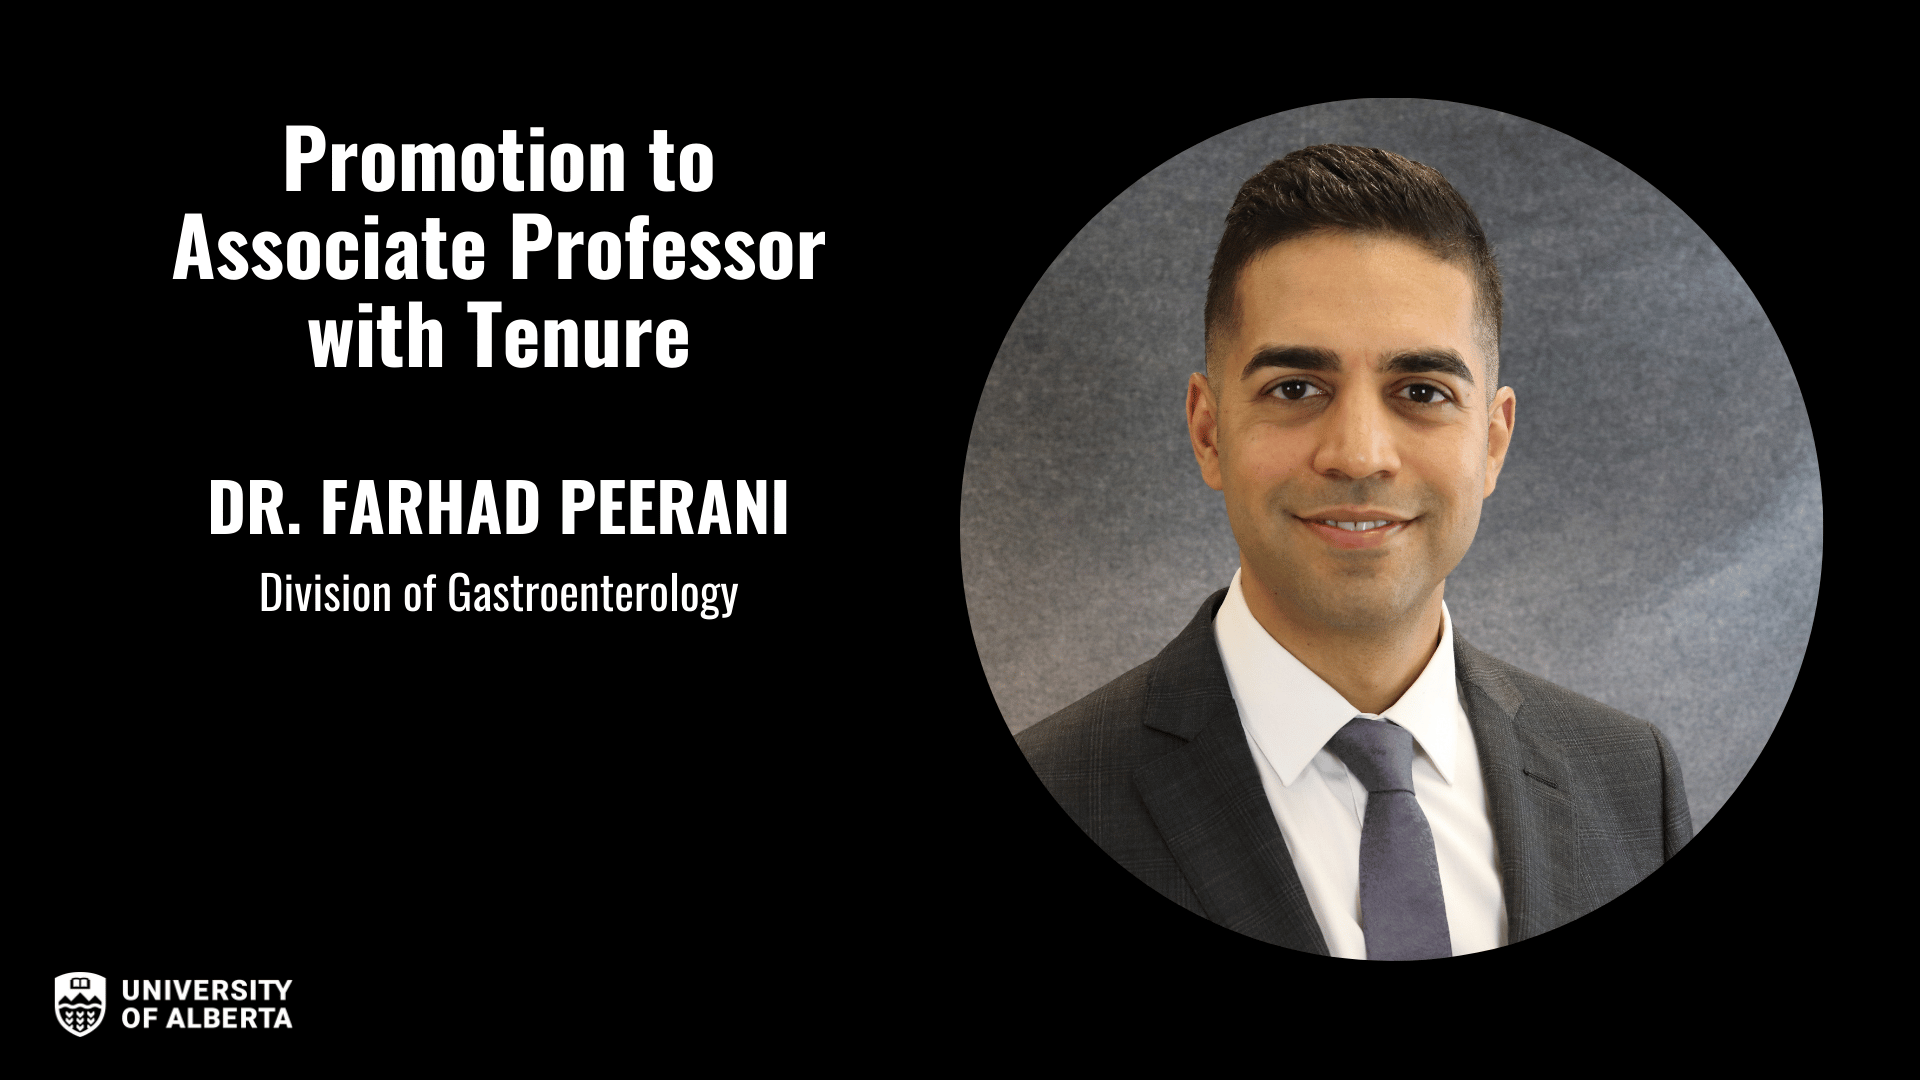 Dr. Farhad Peerani